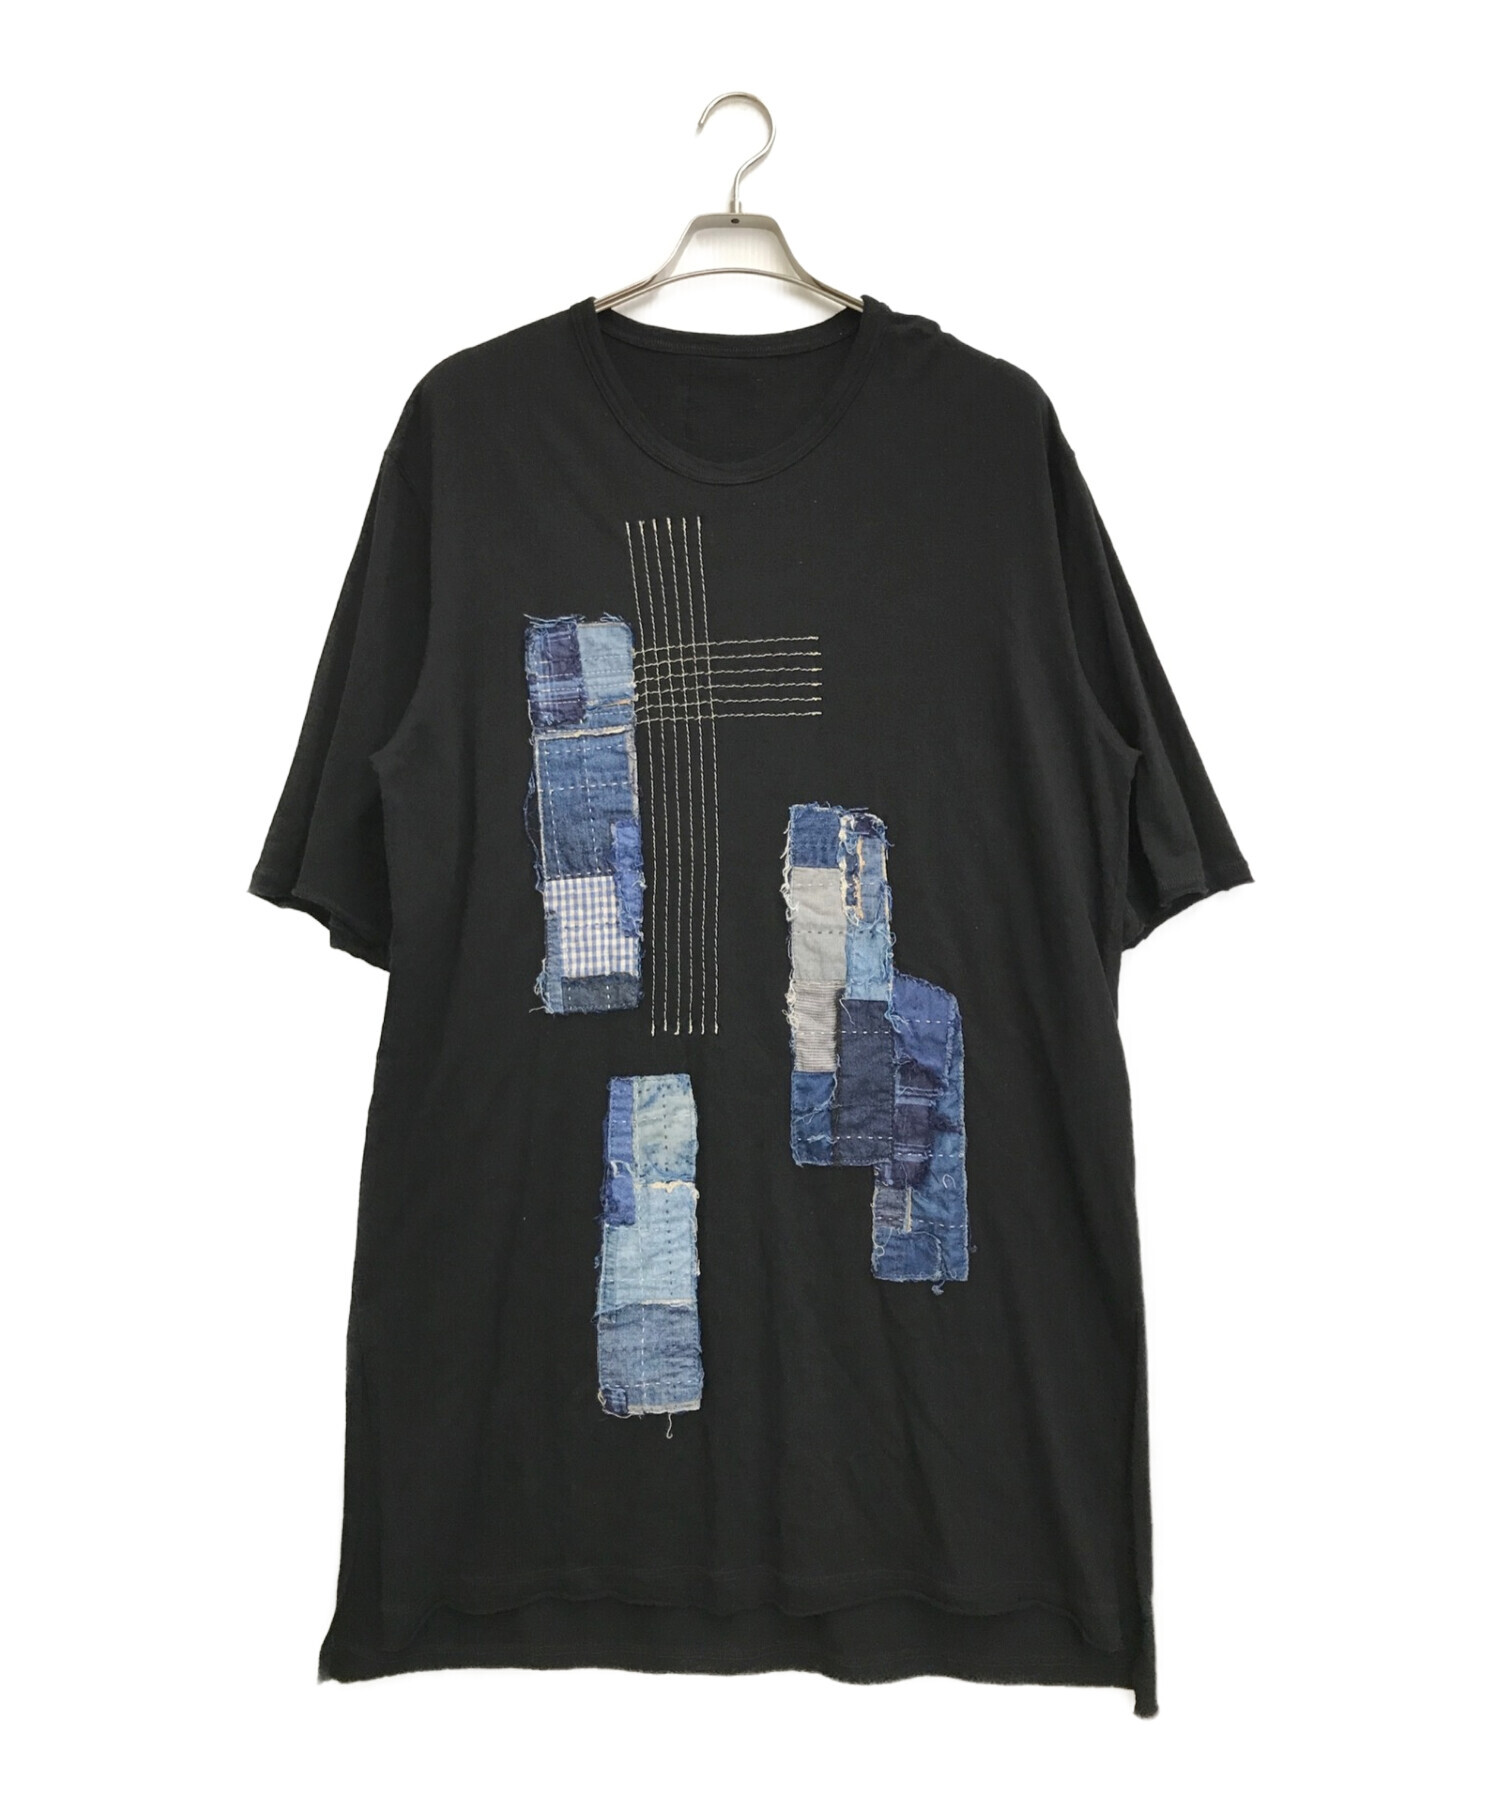 s'yte × KUON (サイト × クオン) ロングTシャツ ブラック×インディゴ サイズ:3